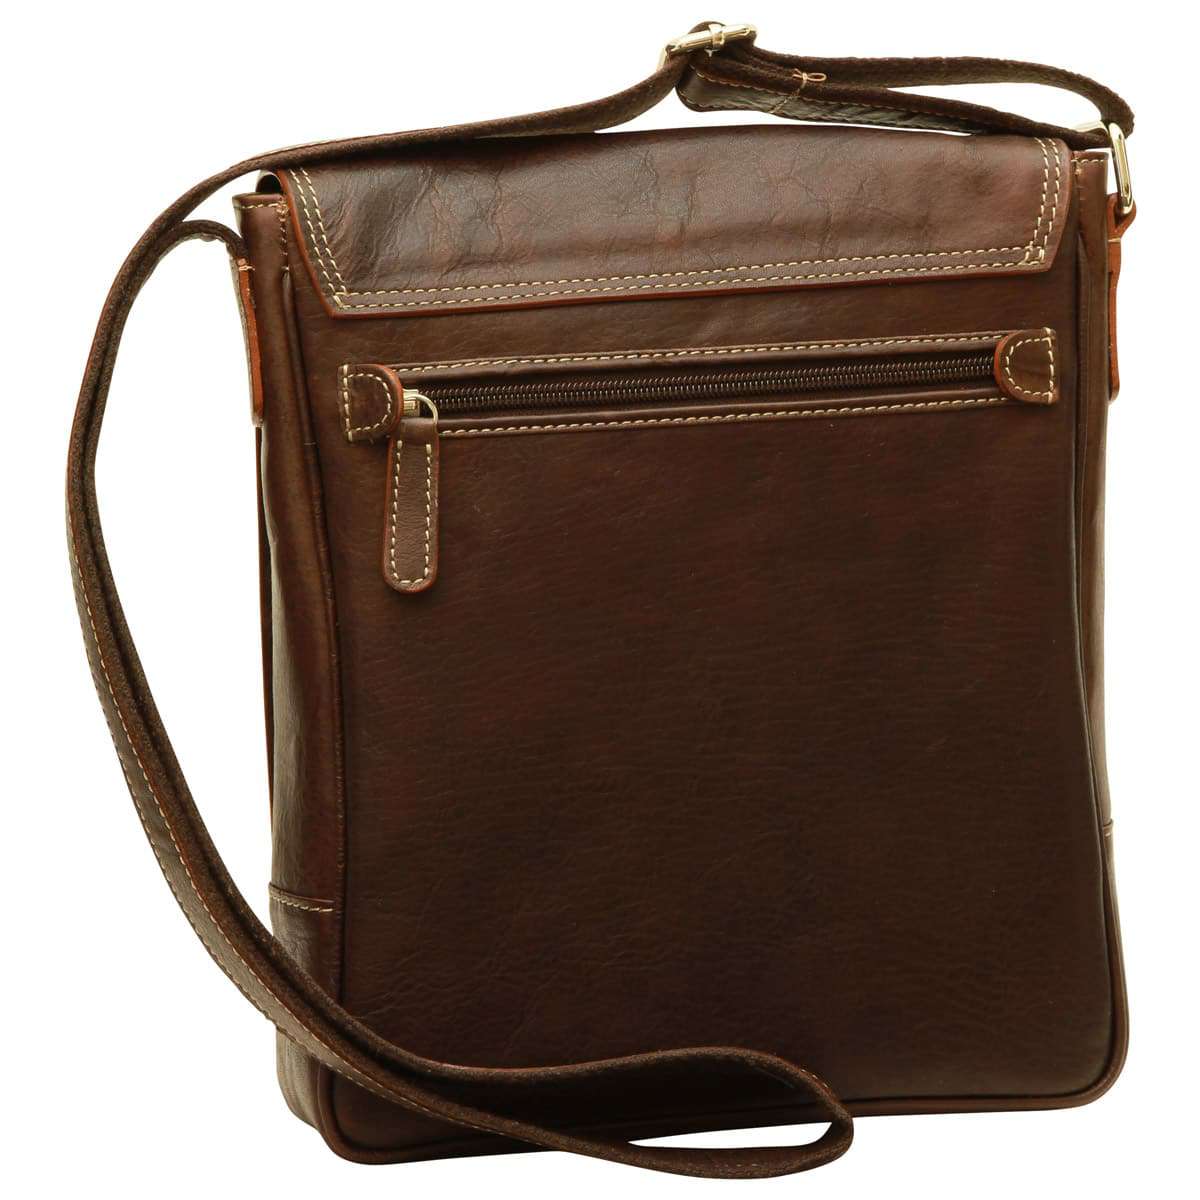 Leather I-Pad bag - Dark Brown | 087361TM UK | Old Angler Firenze